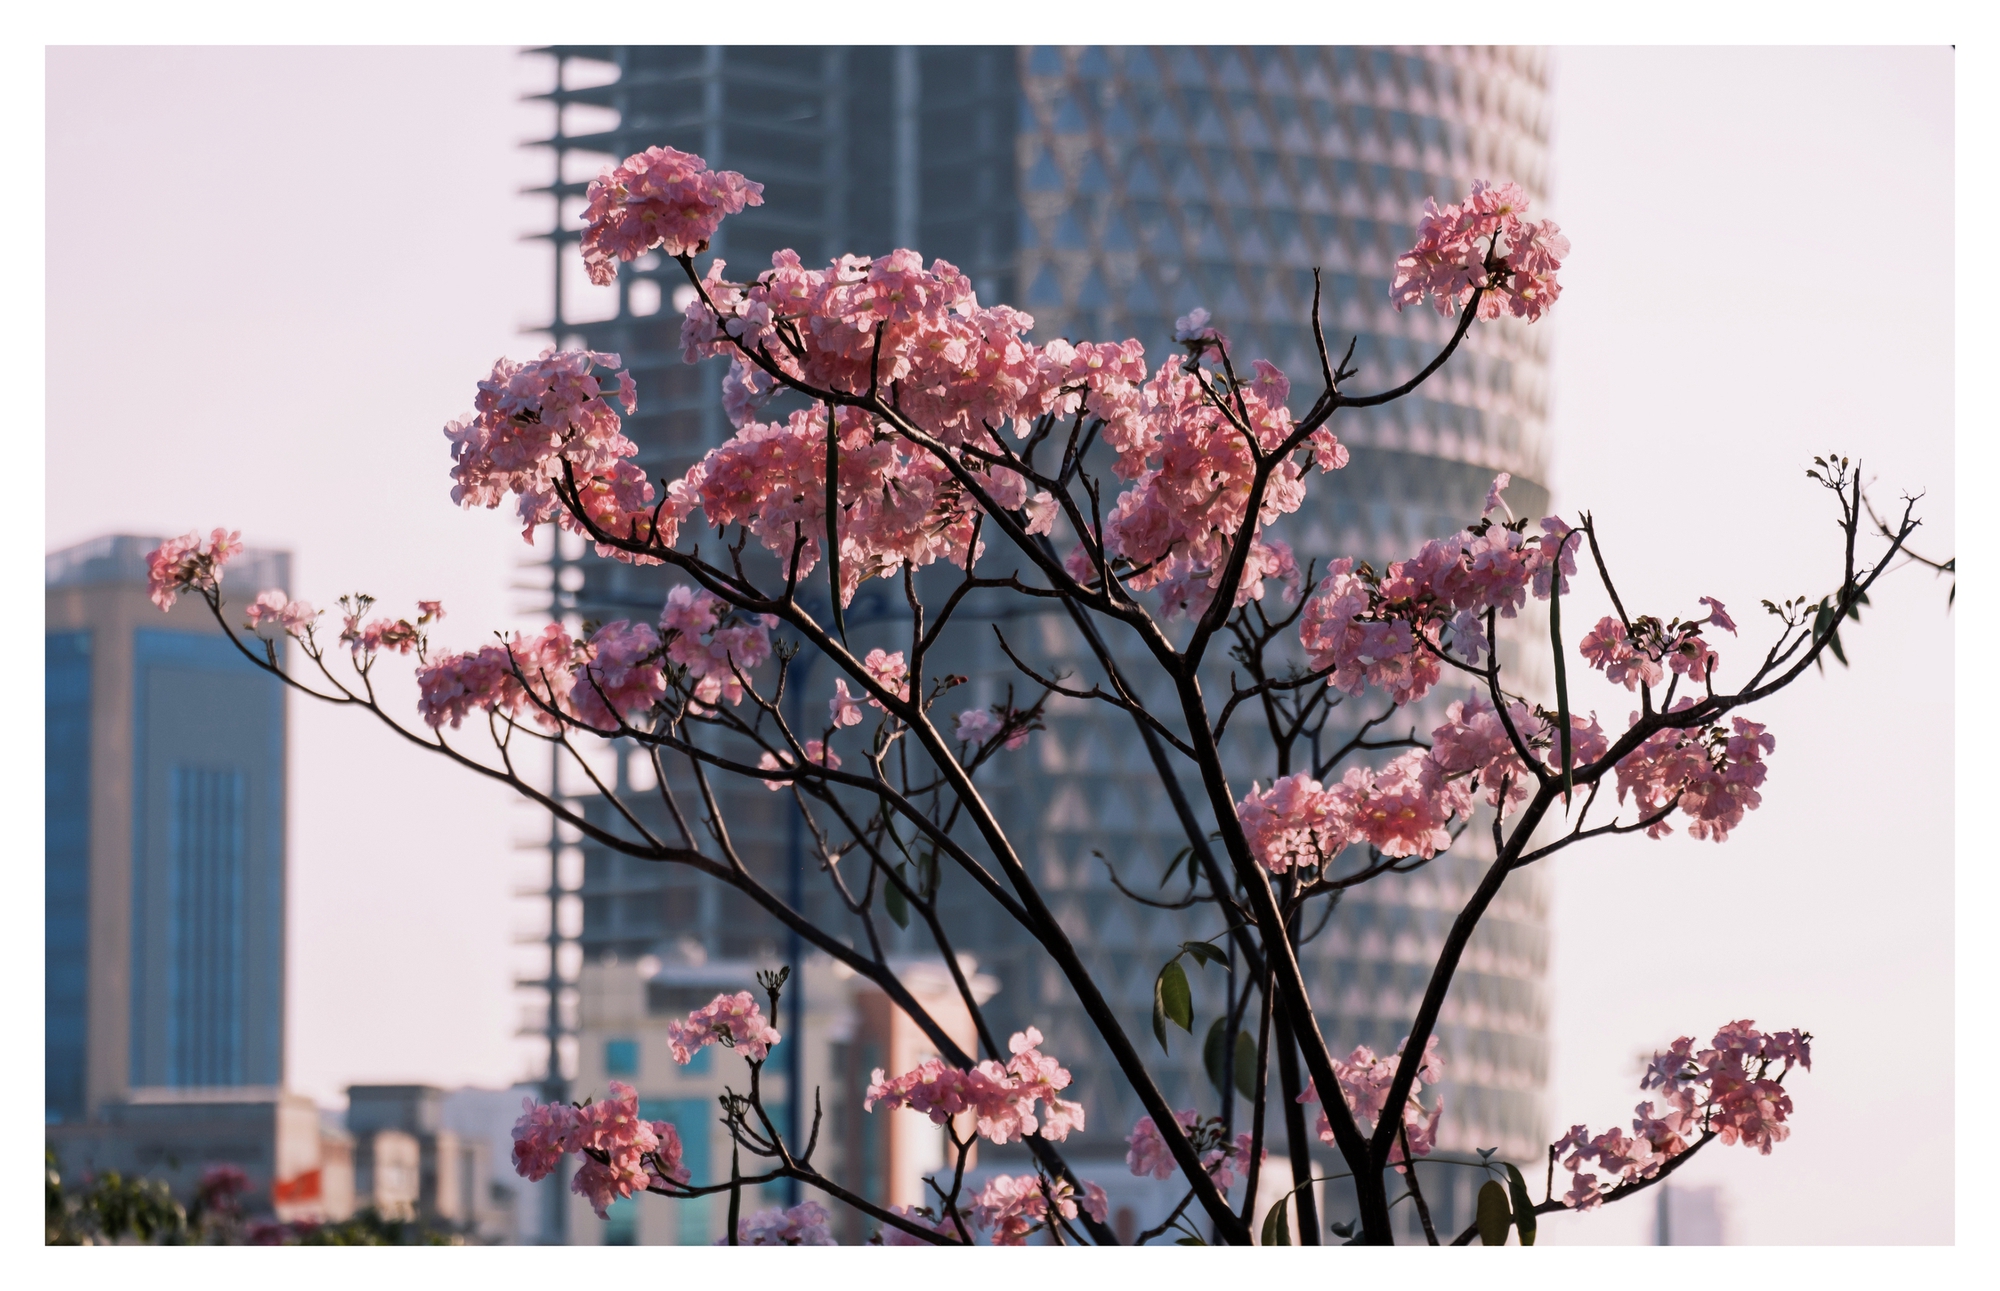 Mùa kèn hồng rợp trời Sài Gòn, chợt thấy thành phố mộng mơ biết bao giữa sắc hoa rực rỡ- Ảnh 8.